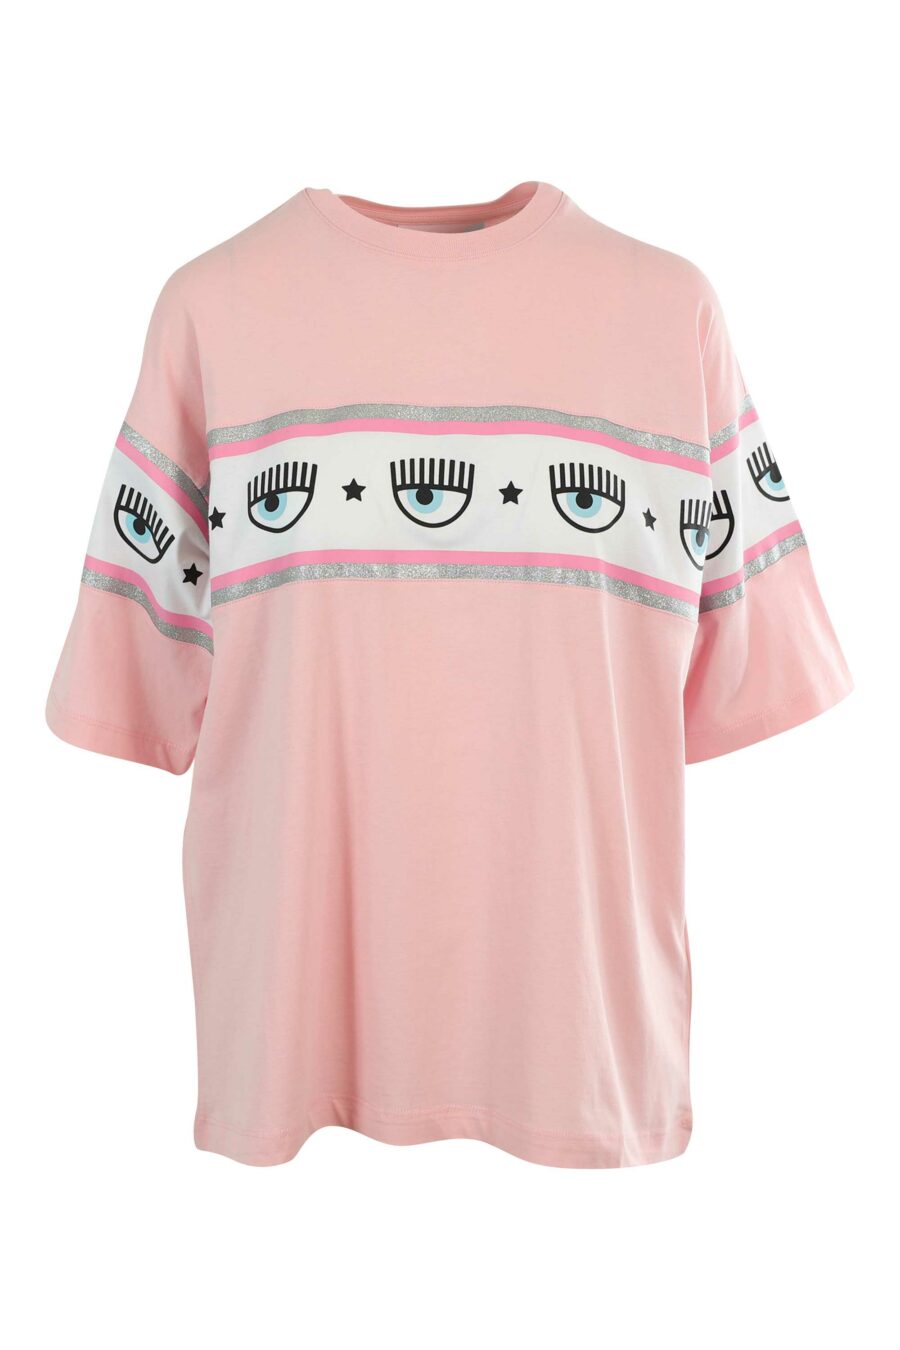 Camiseta rosa manga ancha con logo ojo en cinta - 8052672419422